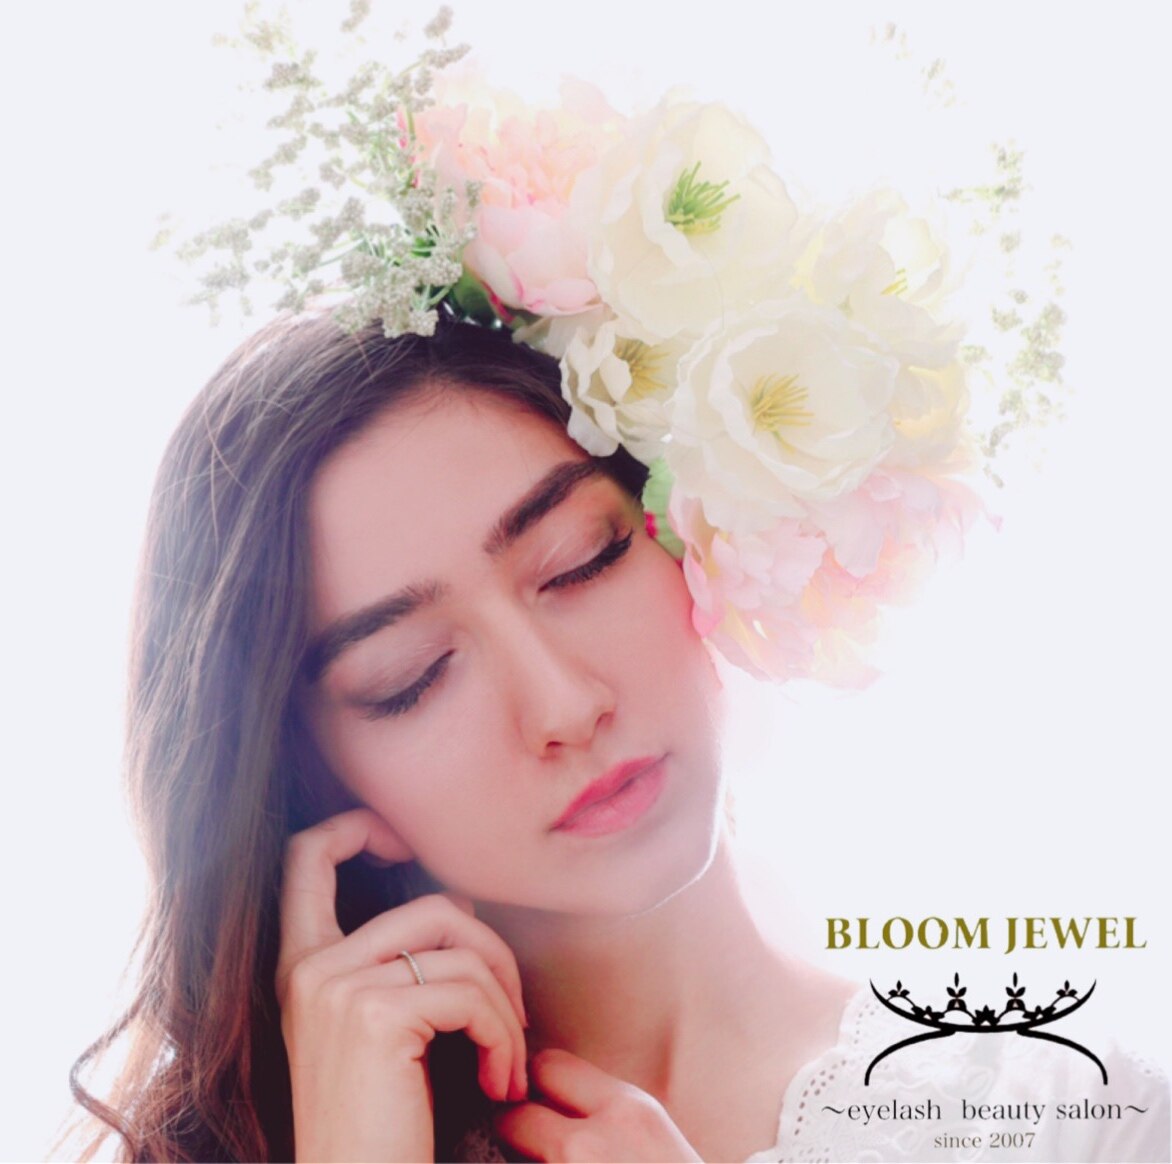 ブルームジュエル(Bloom Jewel)の紹介画像